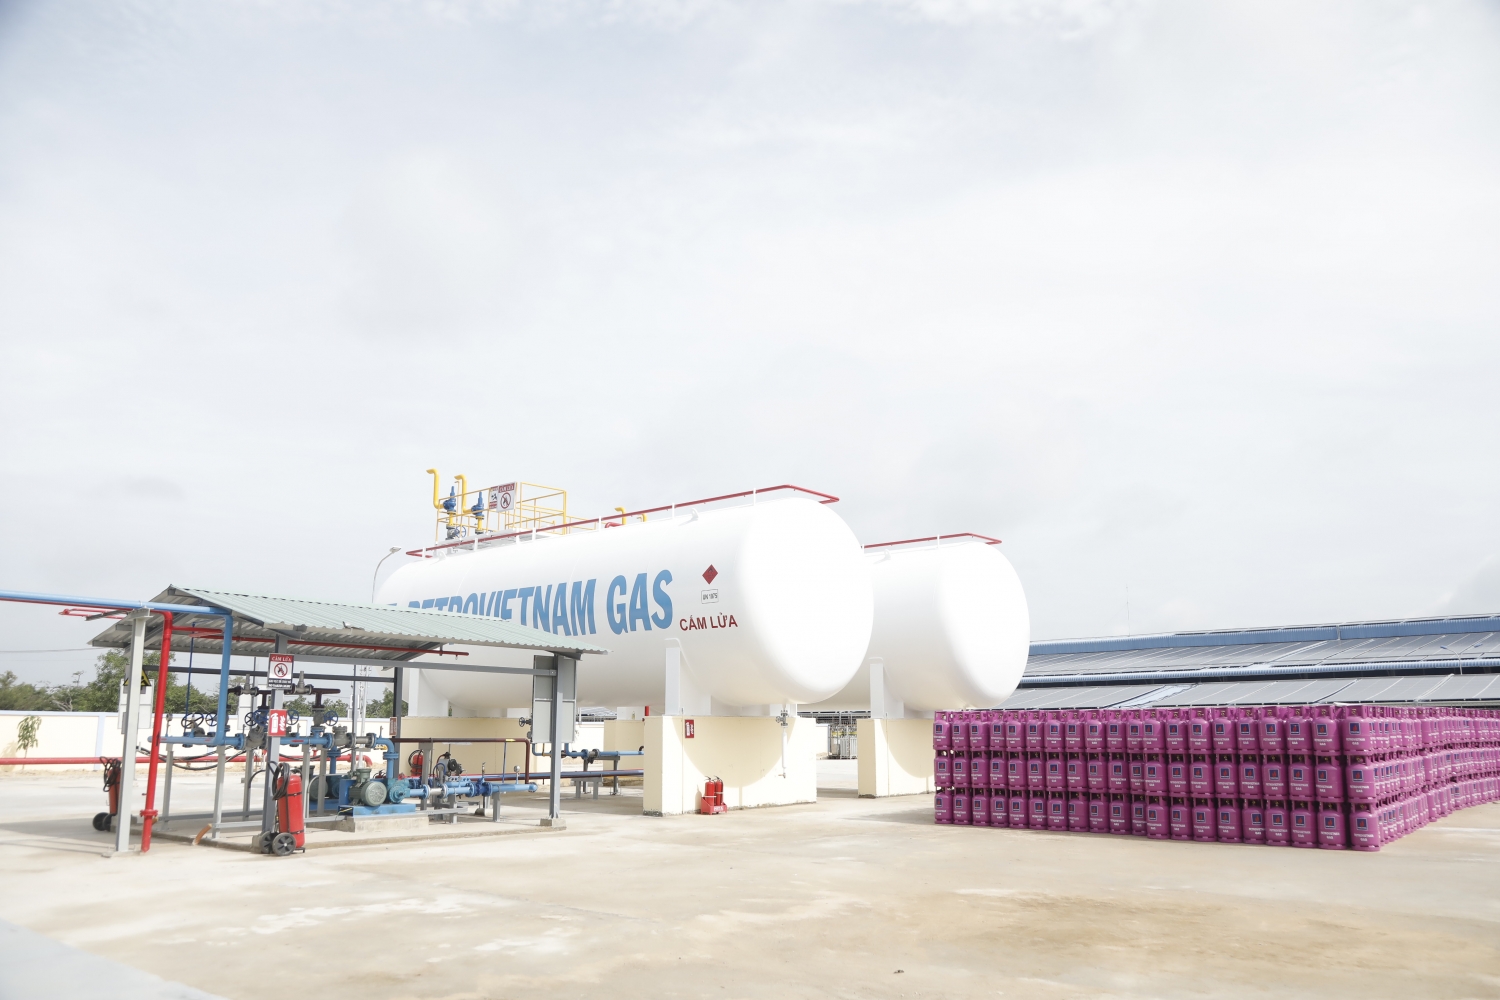 rạm chiết nạp LPG mang thương hiệu PETROVIETNAM GAS  